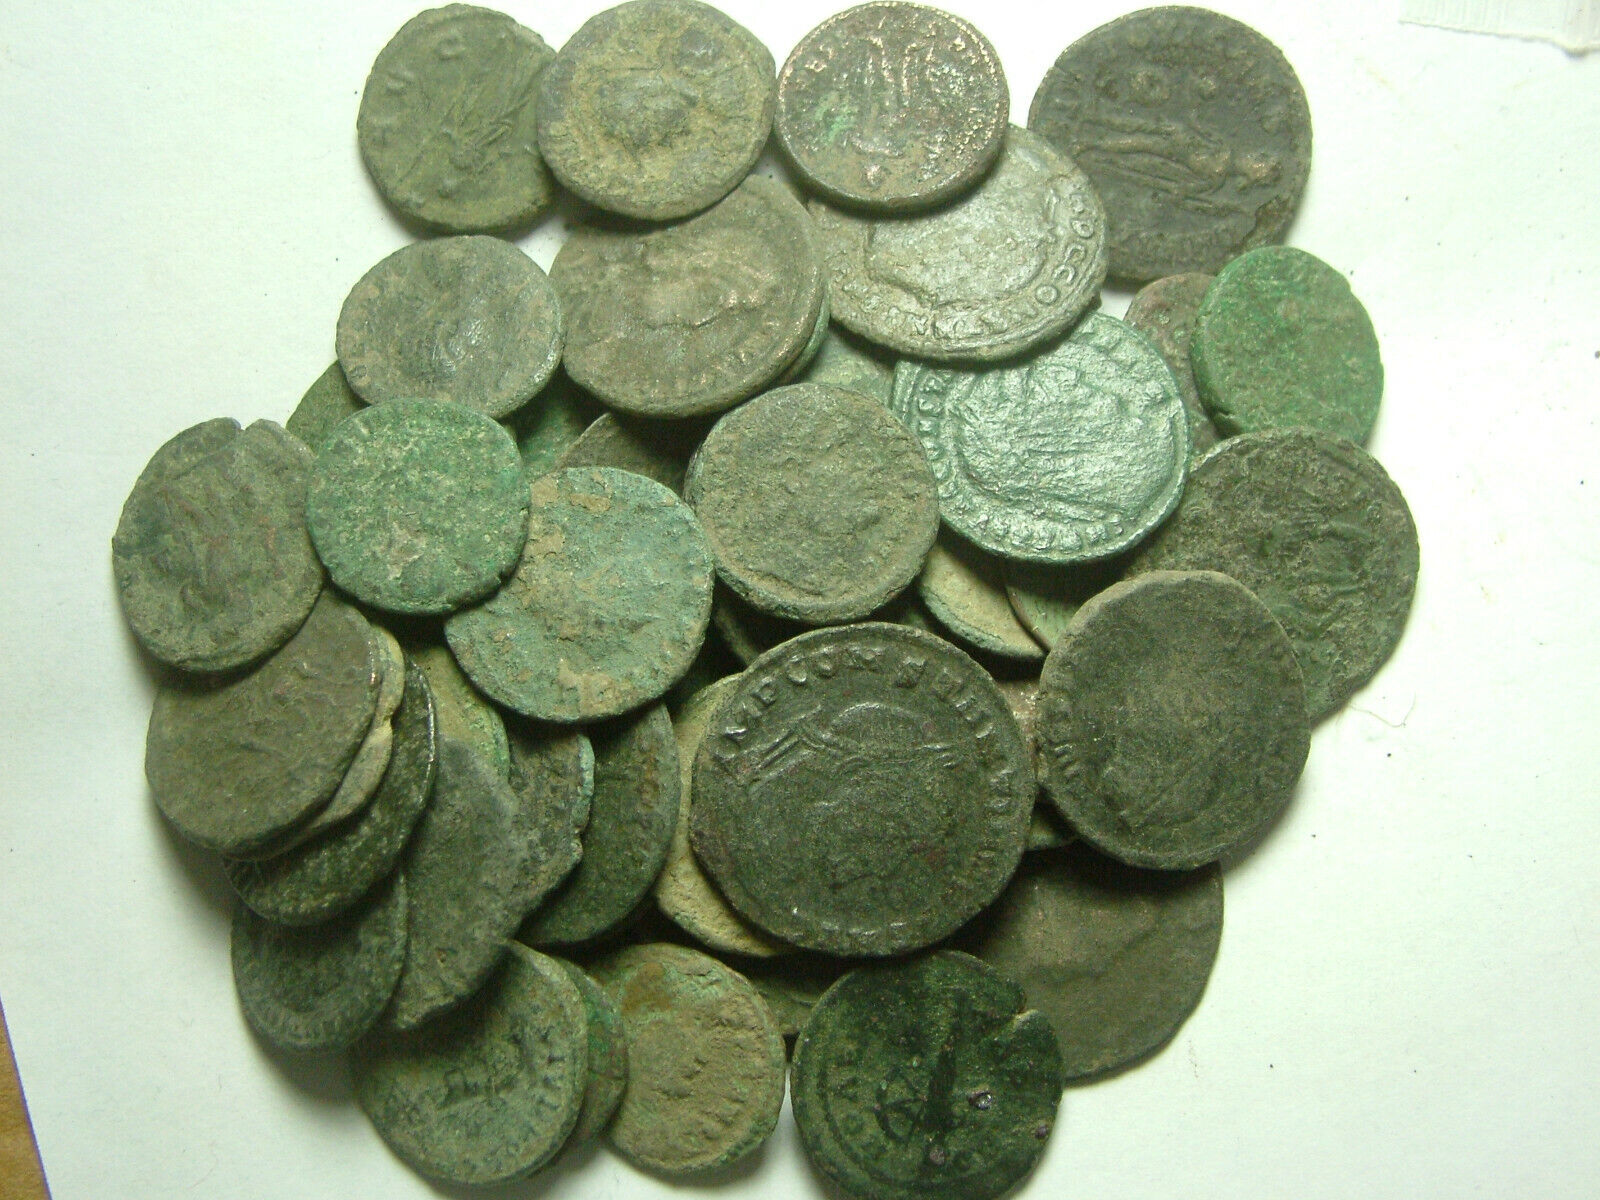 Lot genuine Ancient Roman coins Constantine/Valens/Constantius/Licinius/Claudius Без бренда - фотография #7